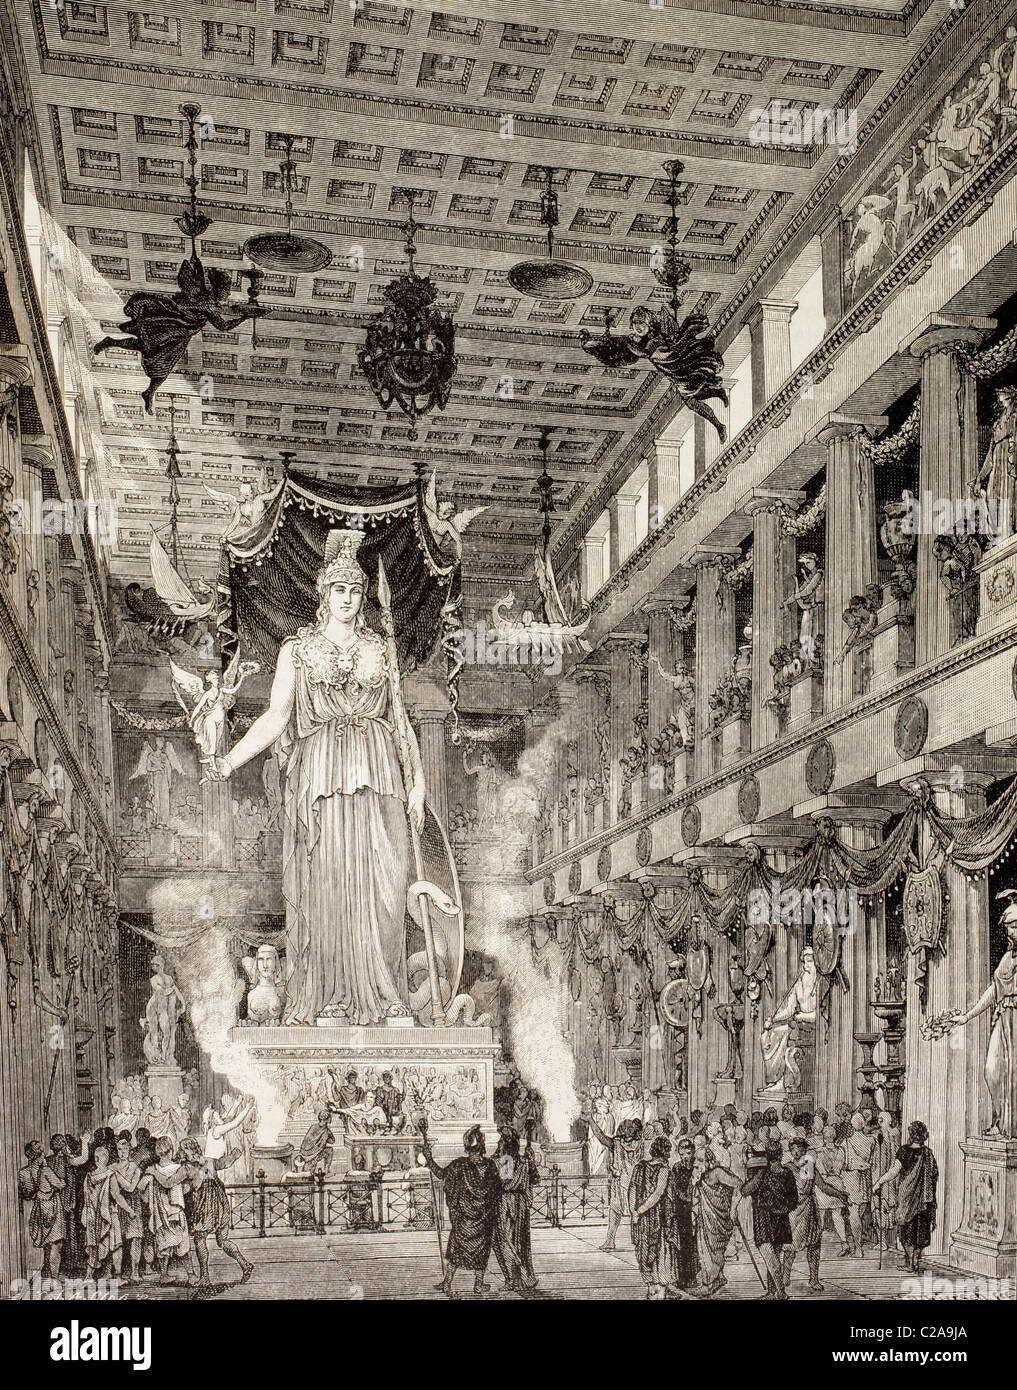 Künstlerische Darstellung des Parthenon, Athen, Griechenland, während der klassischen Periode. Statue der Göttin Athena, im Zentrum. Stockfoto